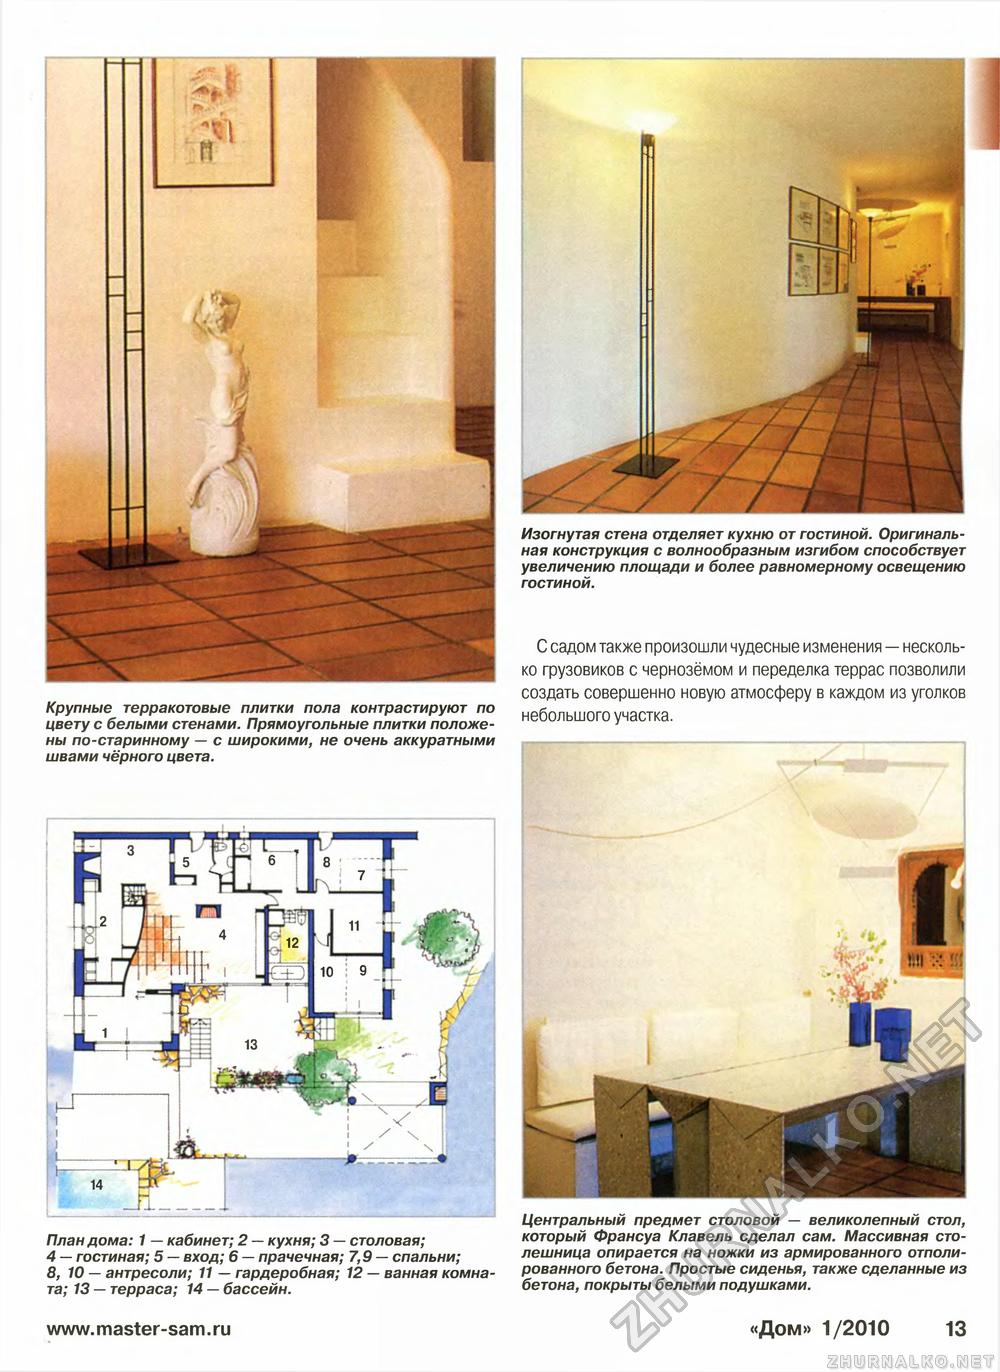 Дом 2010-01, страница 13